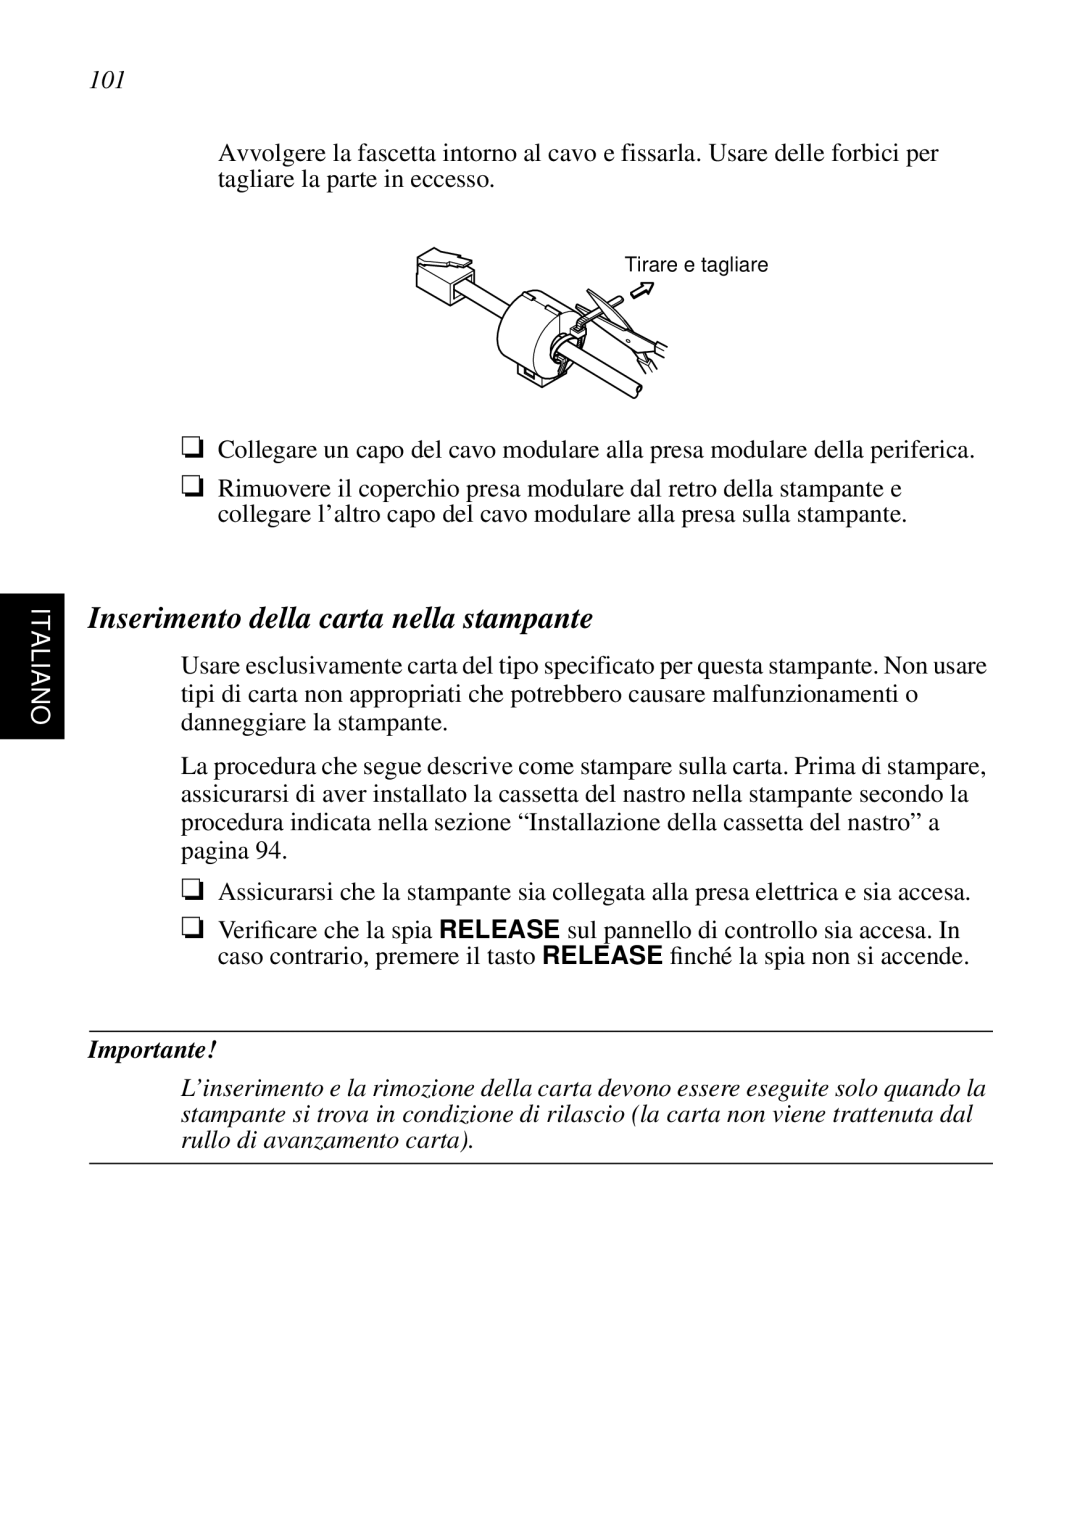 Star Micronics SP298 user manual Inserimento della carta nella stampante, Italiano, Importante 